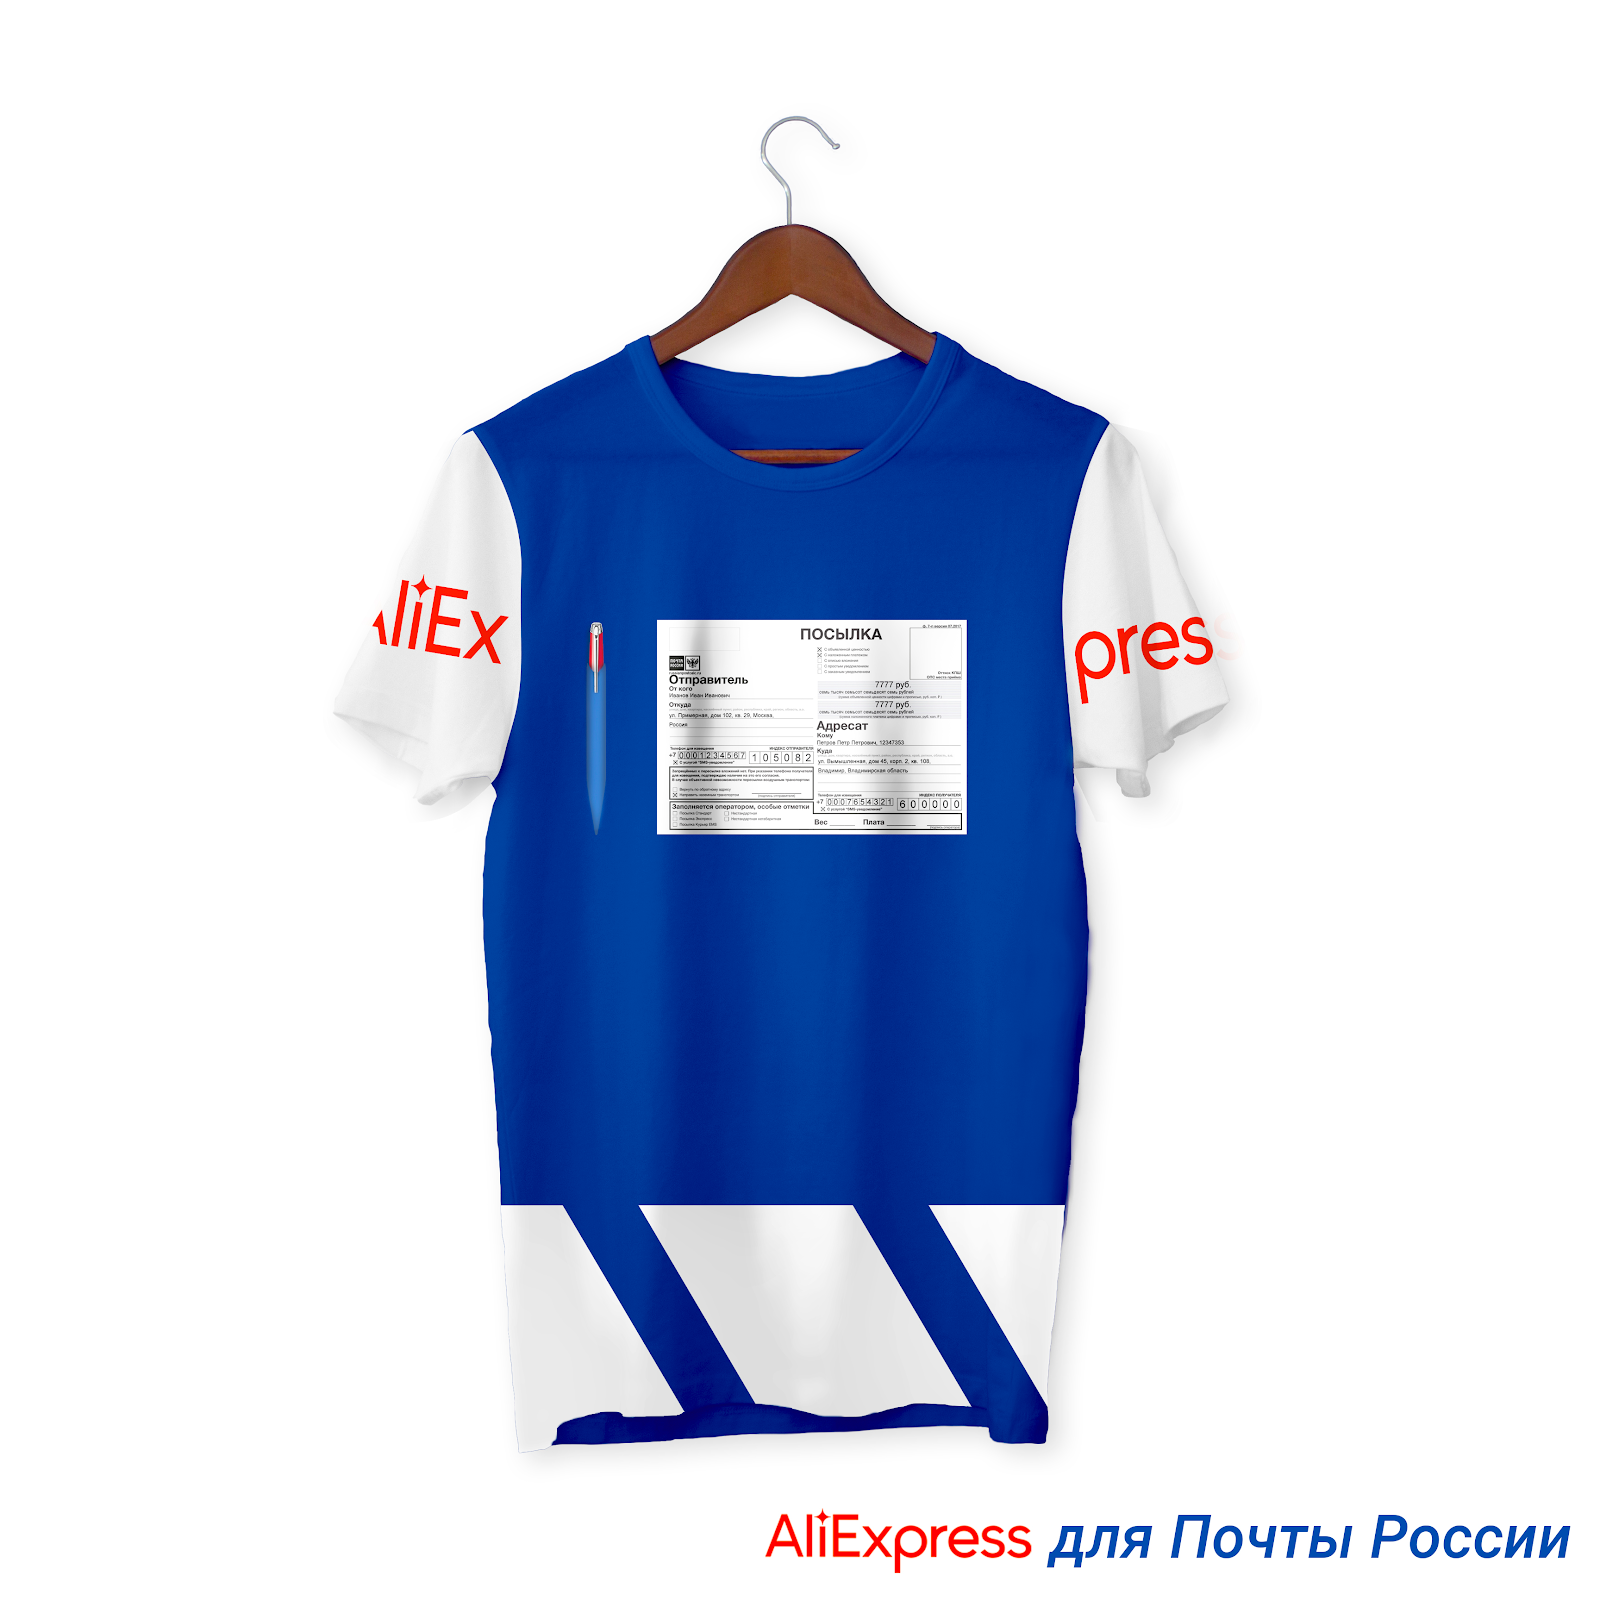 AliExpress выпустил коллекцию одежды и аксессуаров в честь почтальонов